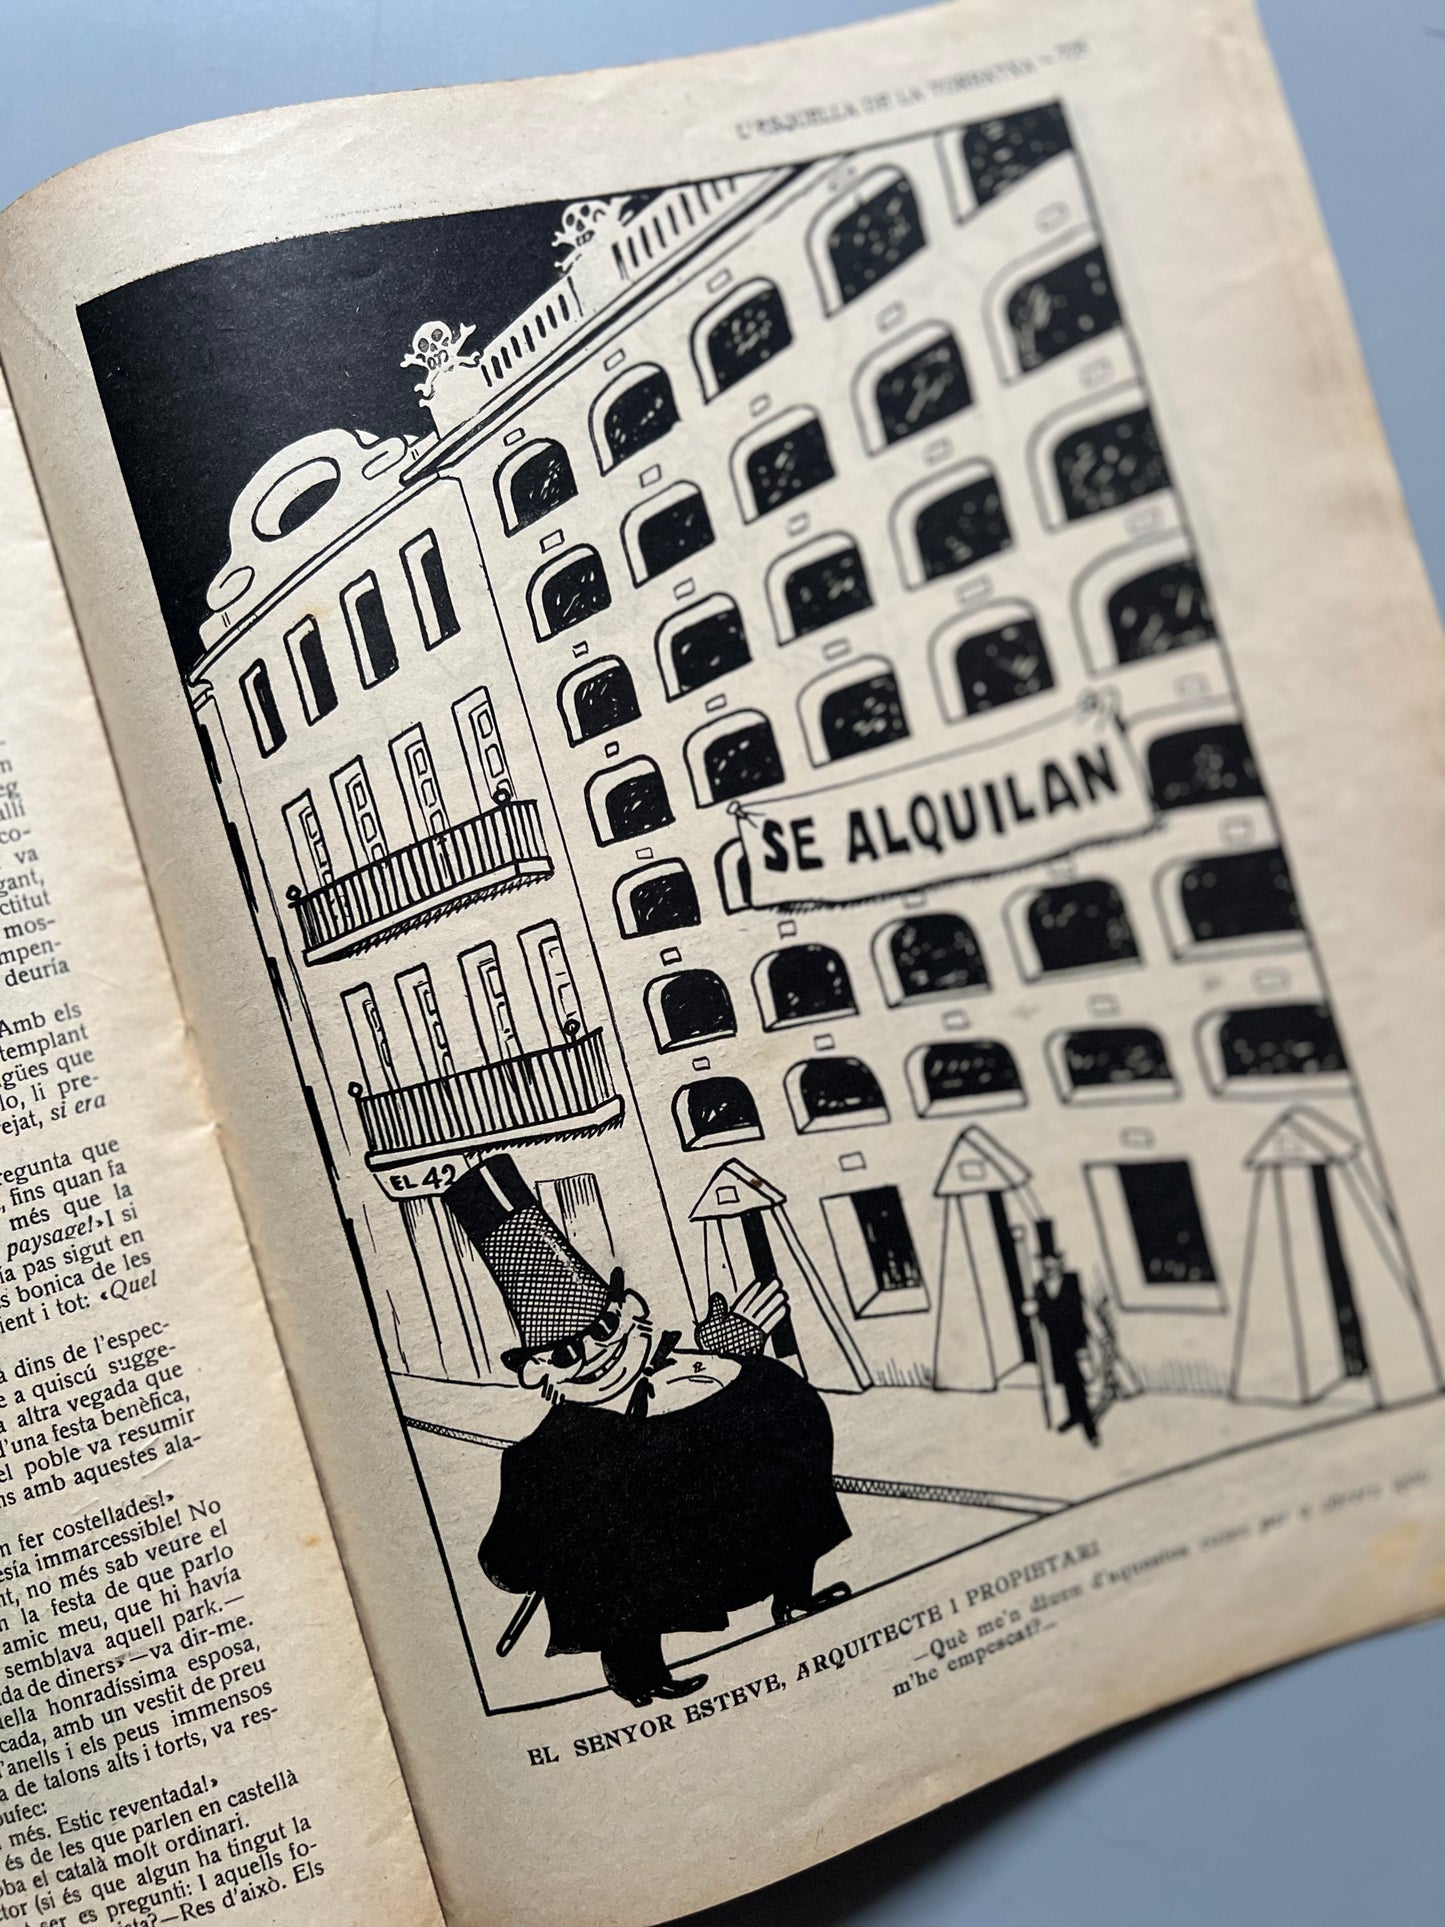 L'Esquella de la Torratxa nº1922, número extraordinario - Barcelona, 29 octubre 1915